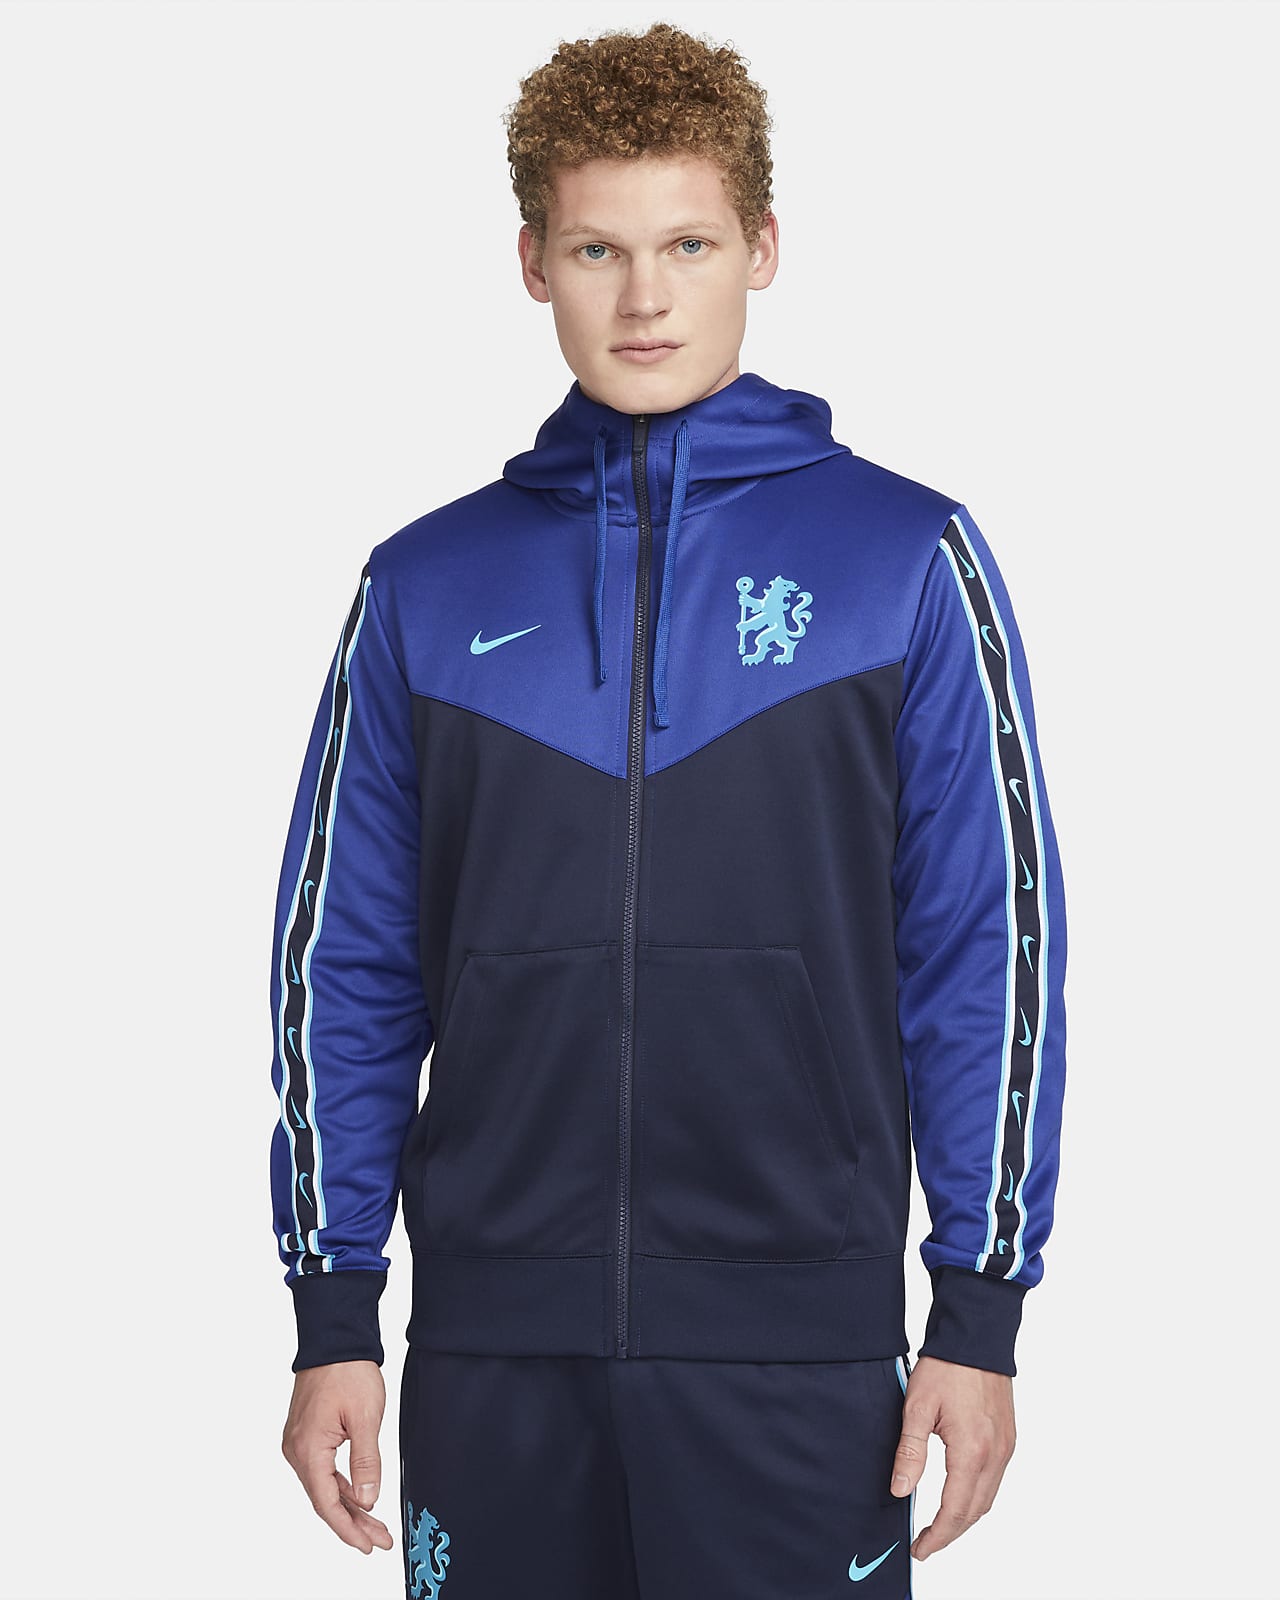 Minachting Ambassadeur innovatie Chelsea F.C. Repeat Men's Nike Full-Zip Hoodie. Nike LU